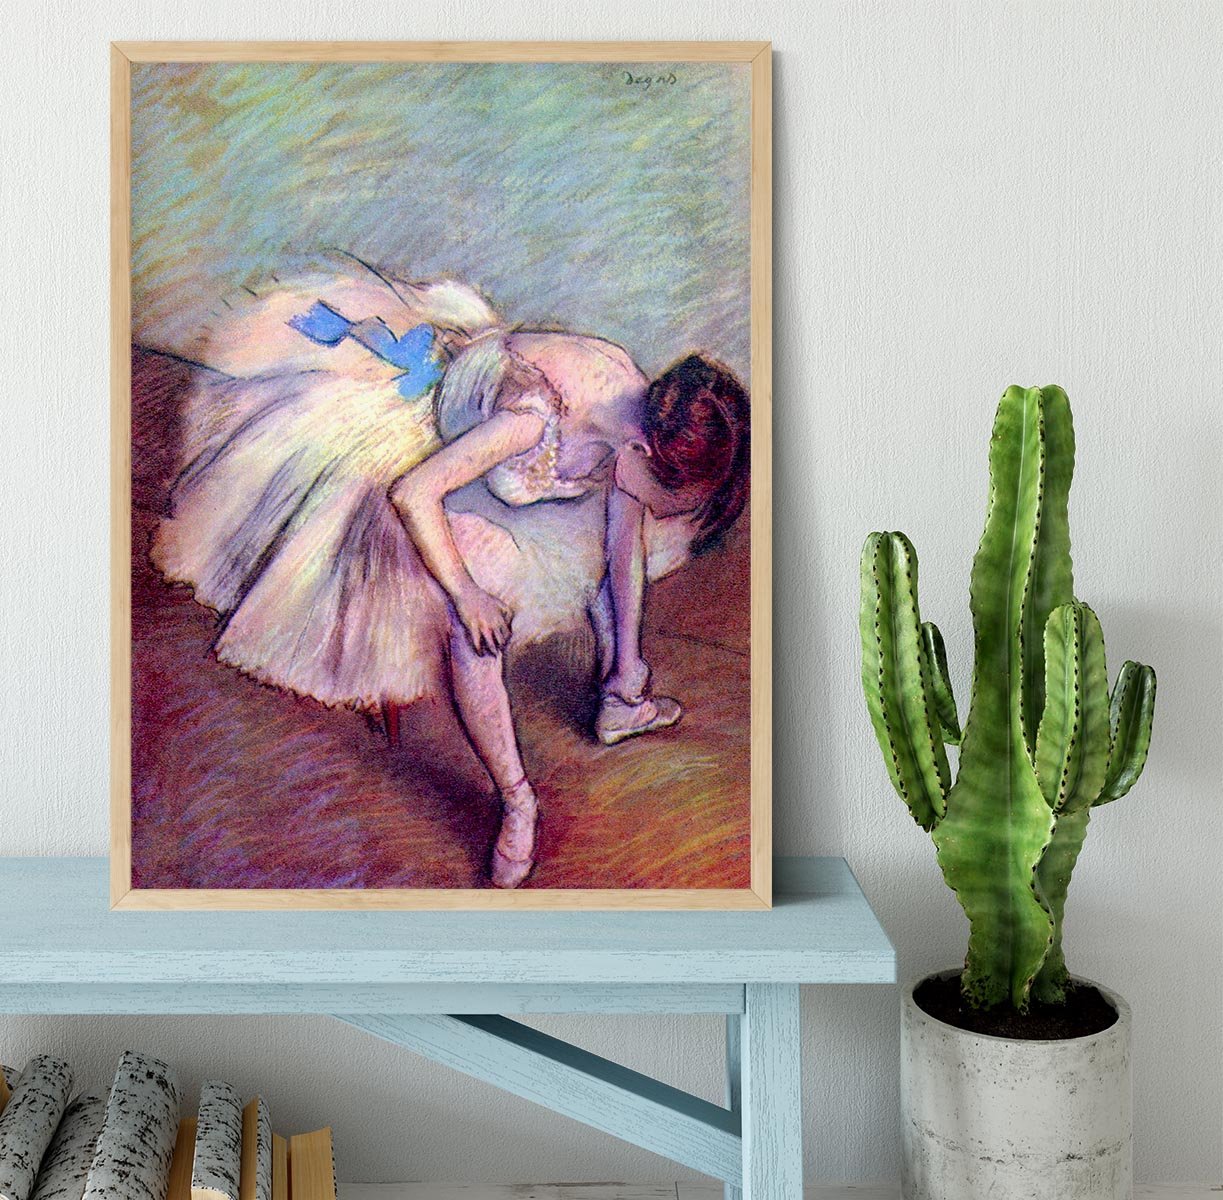 Dancer 2 by Degas Framed Print - Canvas Art Rocks - 4